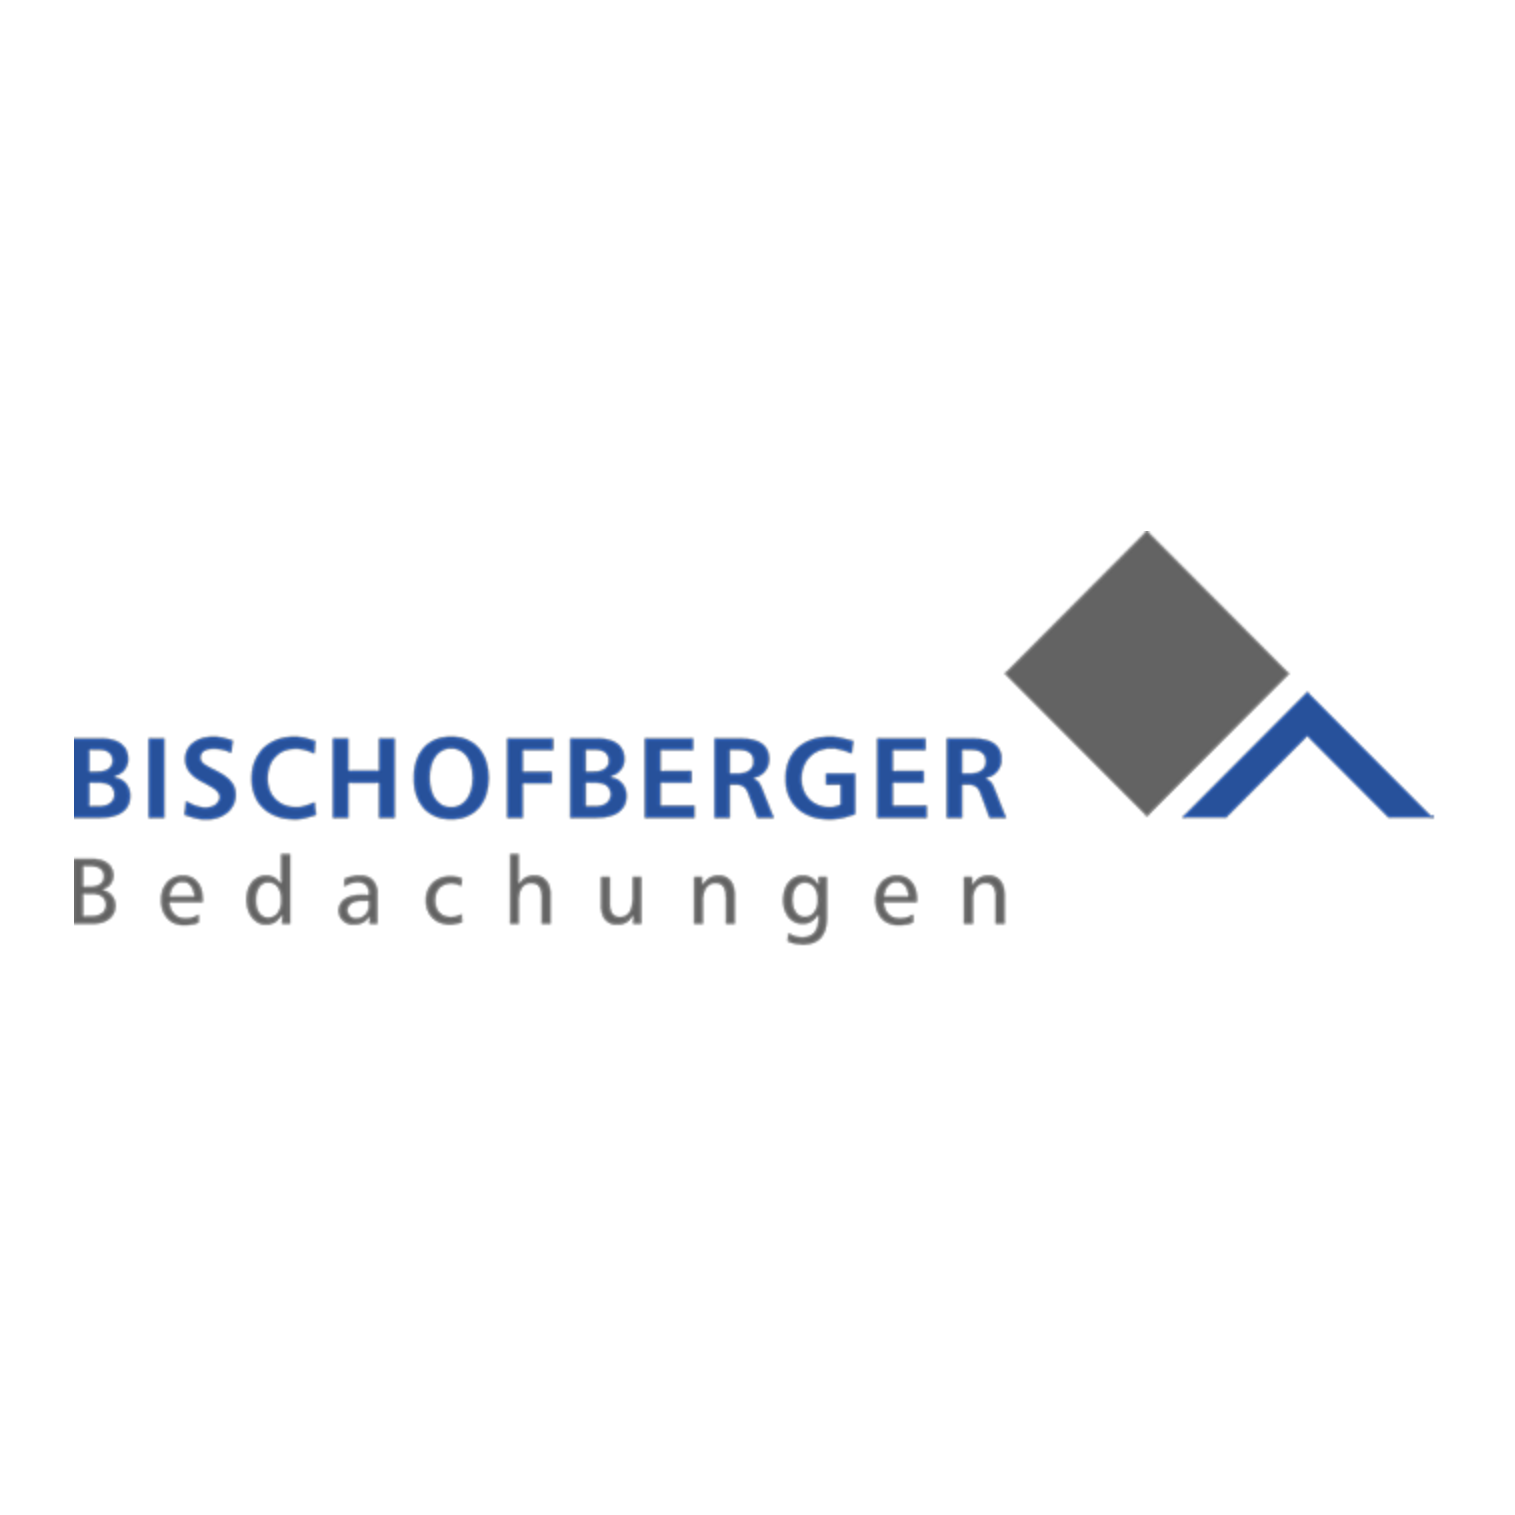 Bischofberger Bedachungen AG Logo